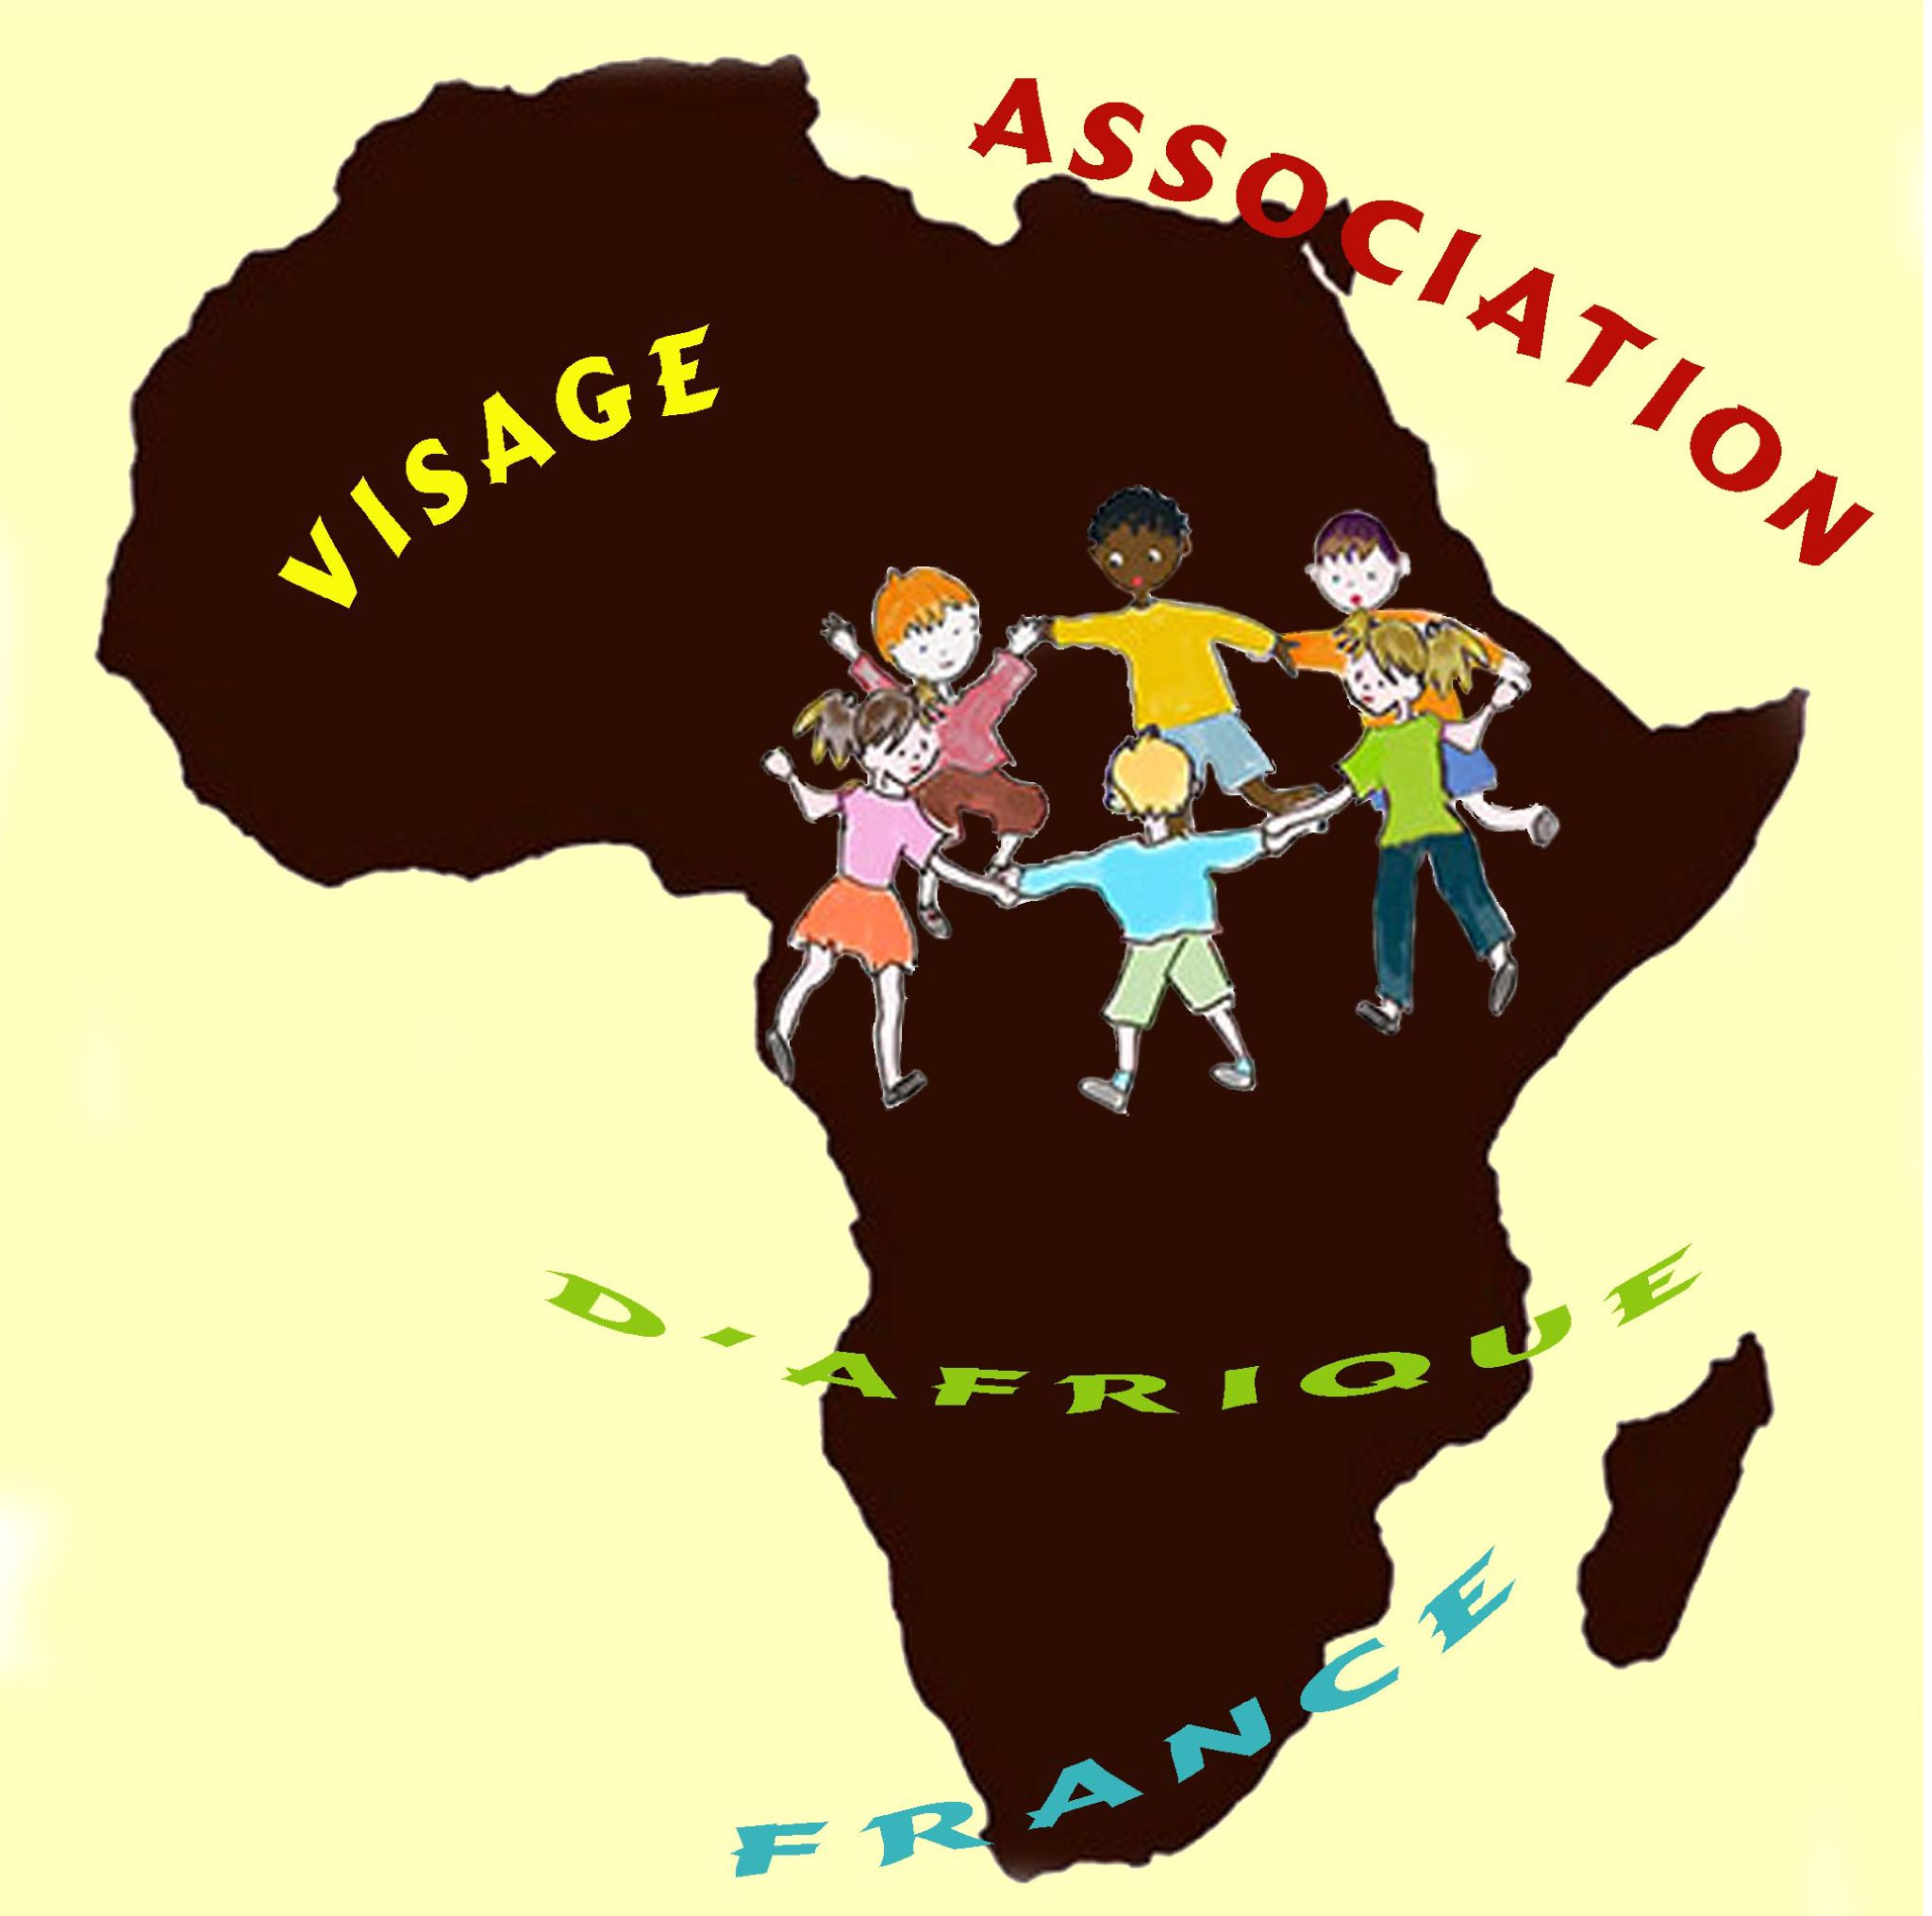 Visage d'Afrique